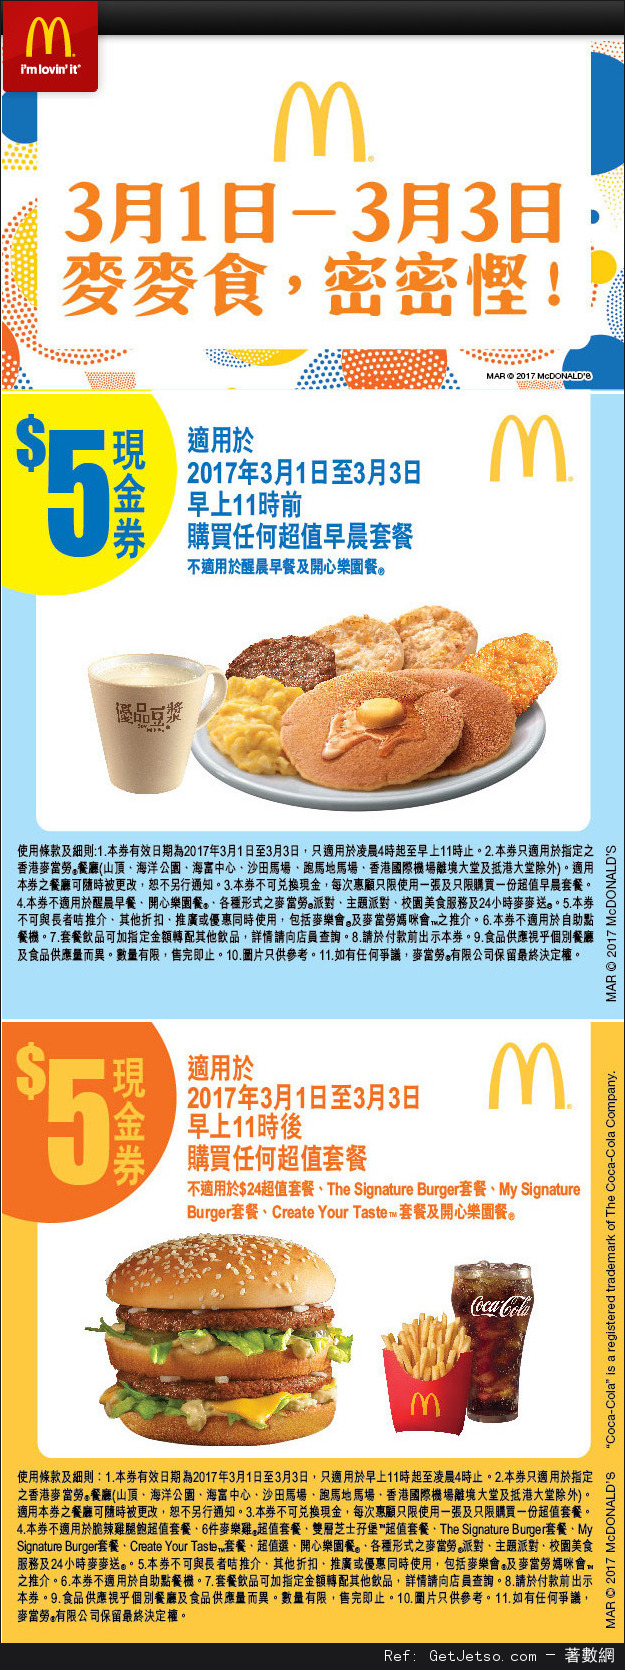 麥當勞早晨/超值套餐折扣優惠券(17年3月1-3日)圖片1